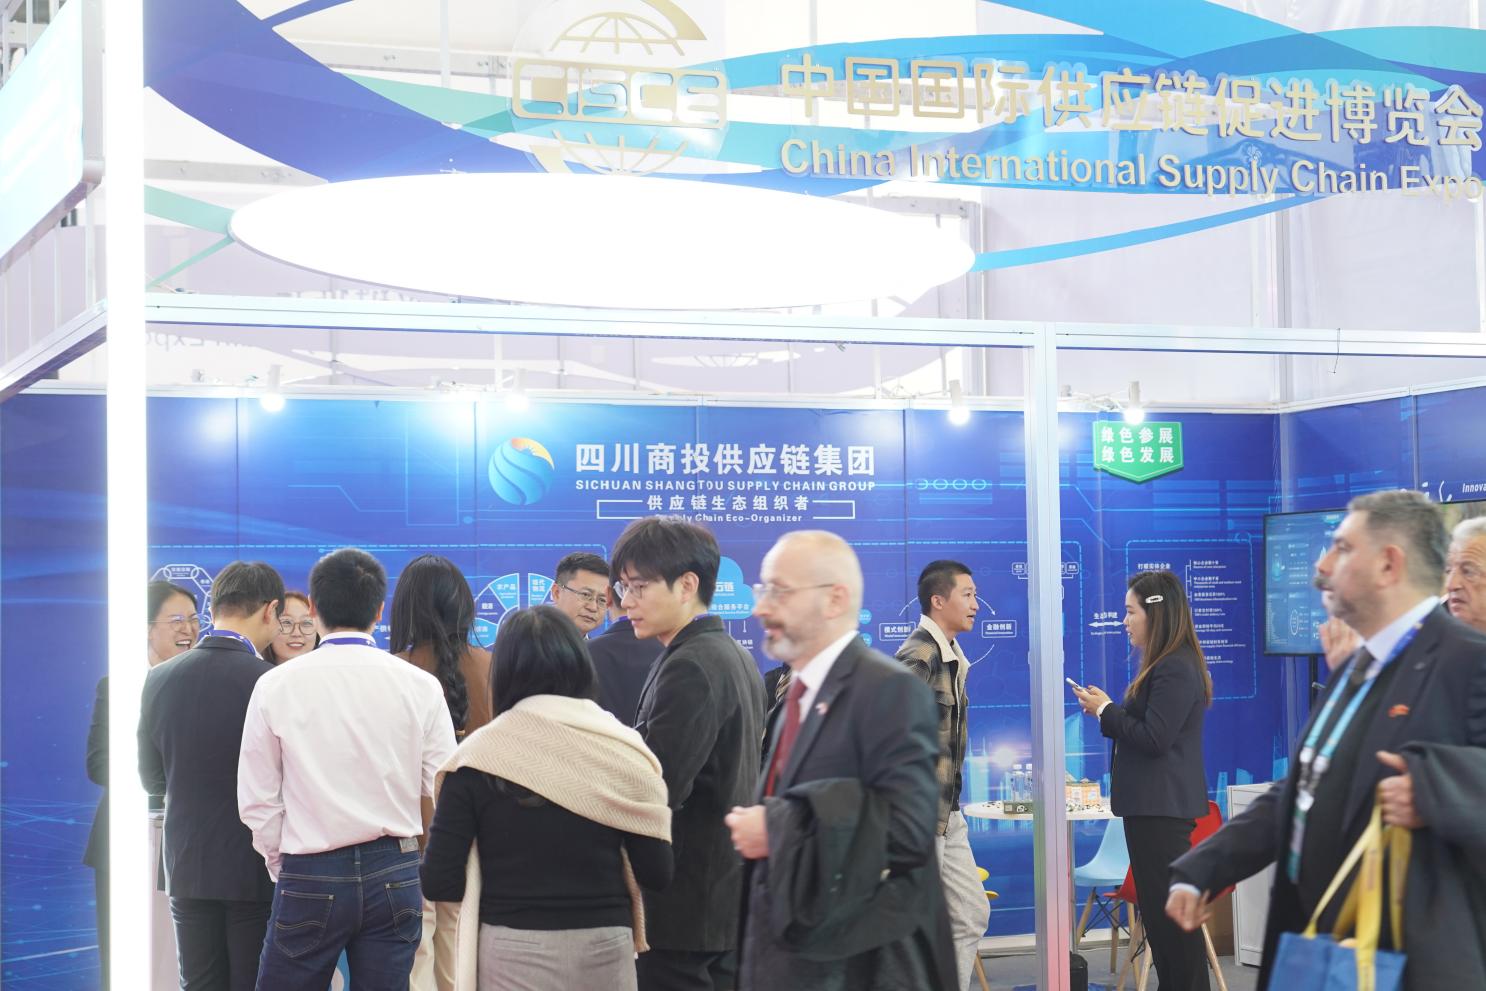 四川商投供应链集团亮相首届中国国际供应链促进博览会